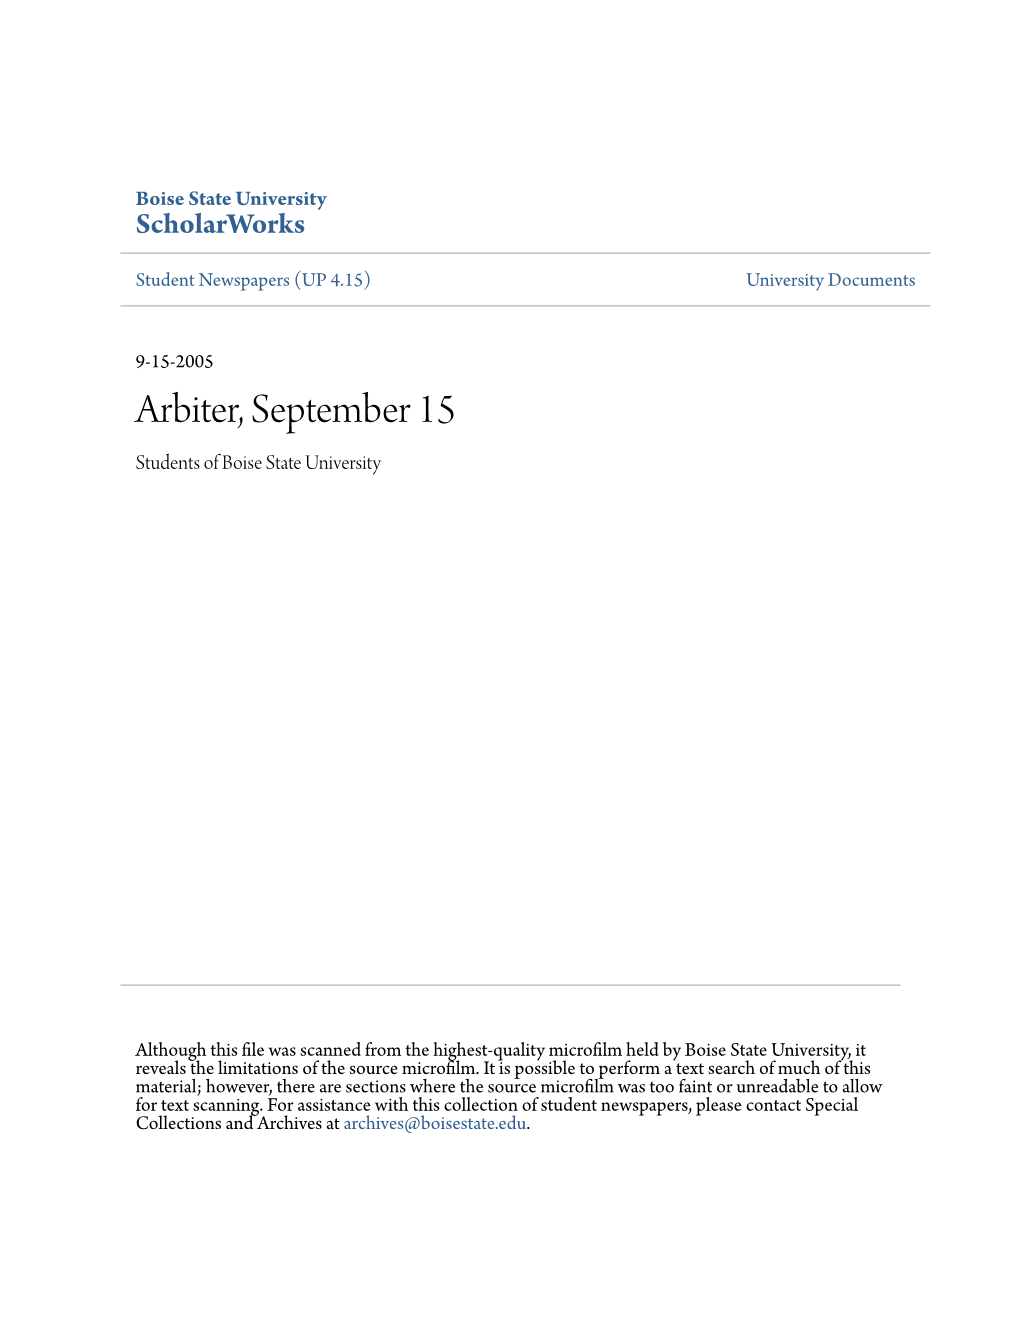 Arbiter, September 15 Students of Boise State University